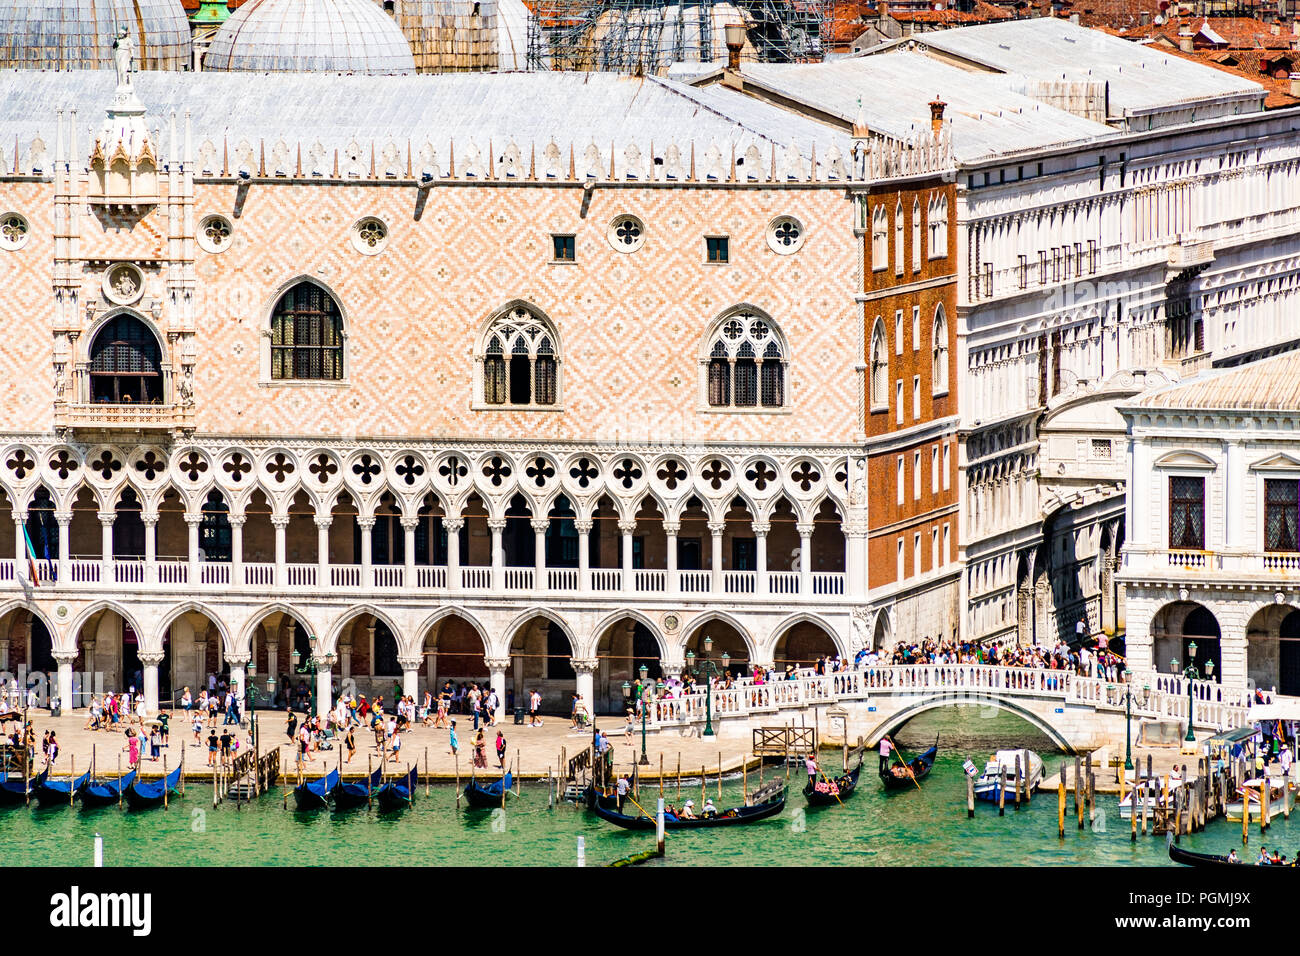 Il famoso Palazzo Ducale, il Palazzo Ducale, è un palazzo costruito in stile gotico veneziano e uno dei principali punti di riferimento di Venezia Foto Stock